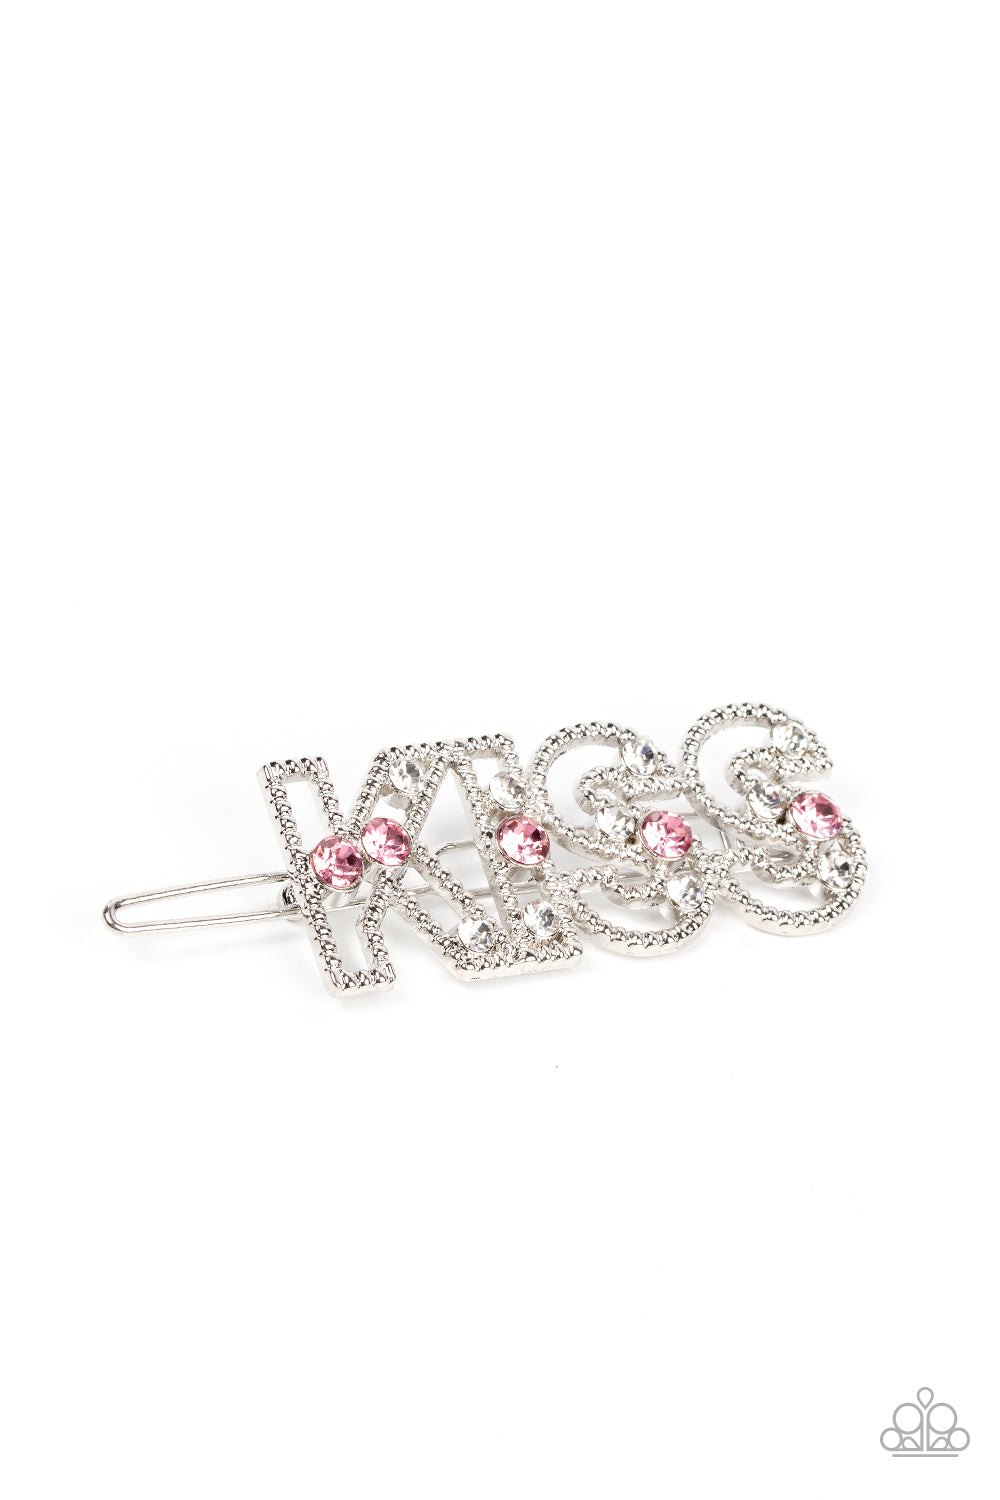 Kiss Bliss - Pink hair clip B089